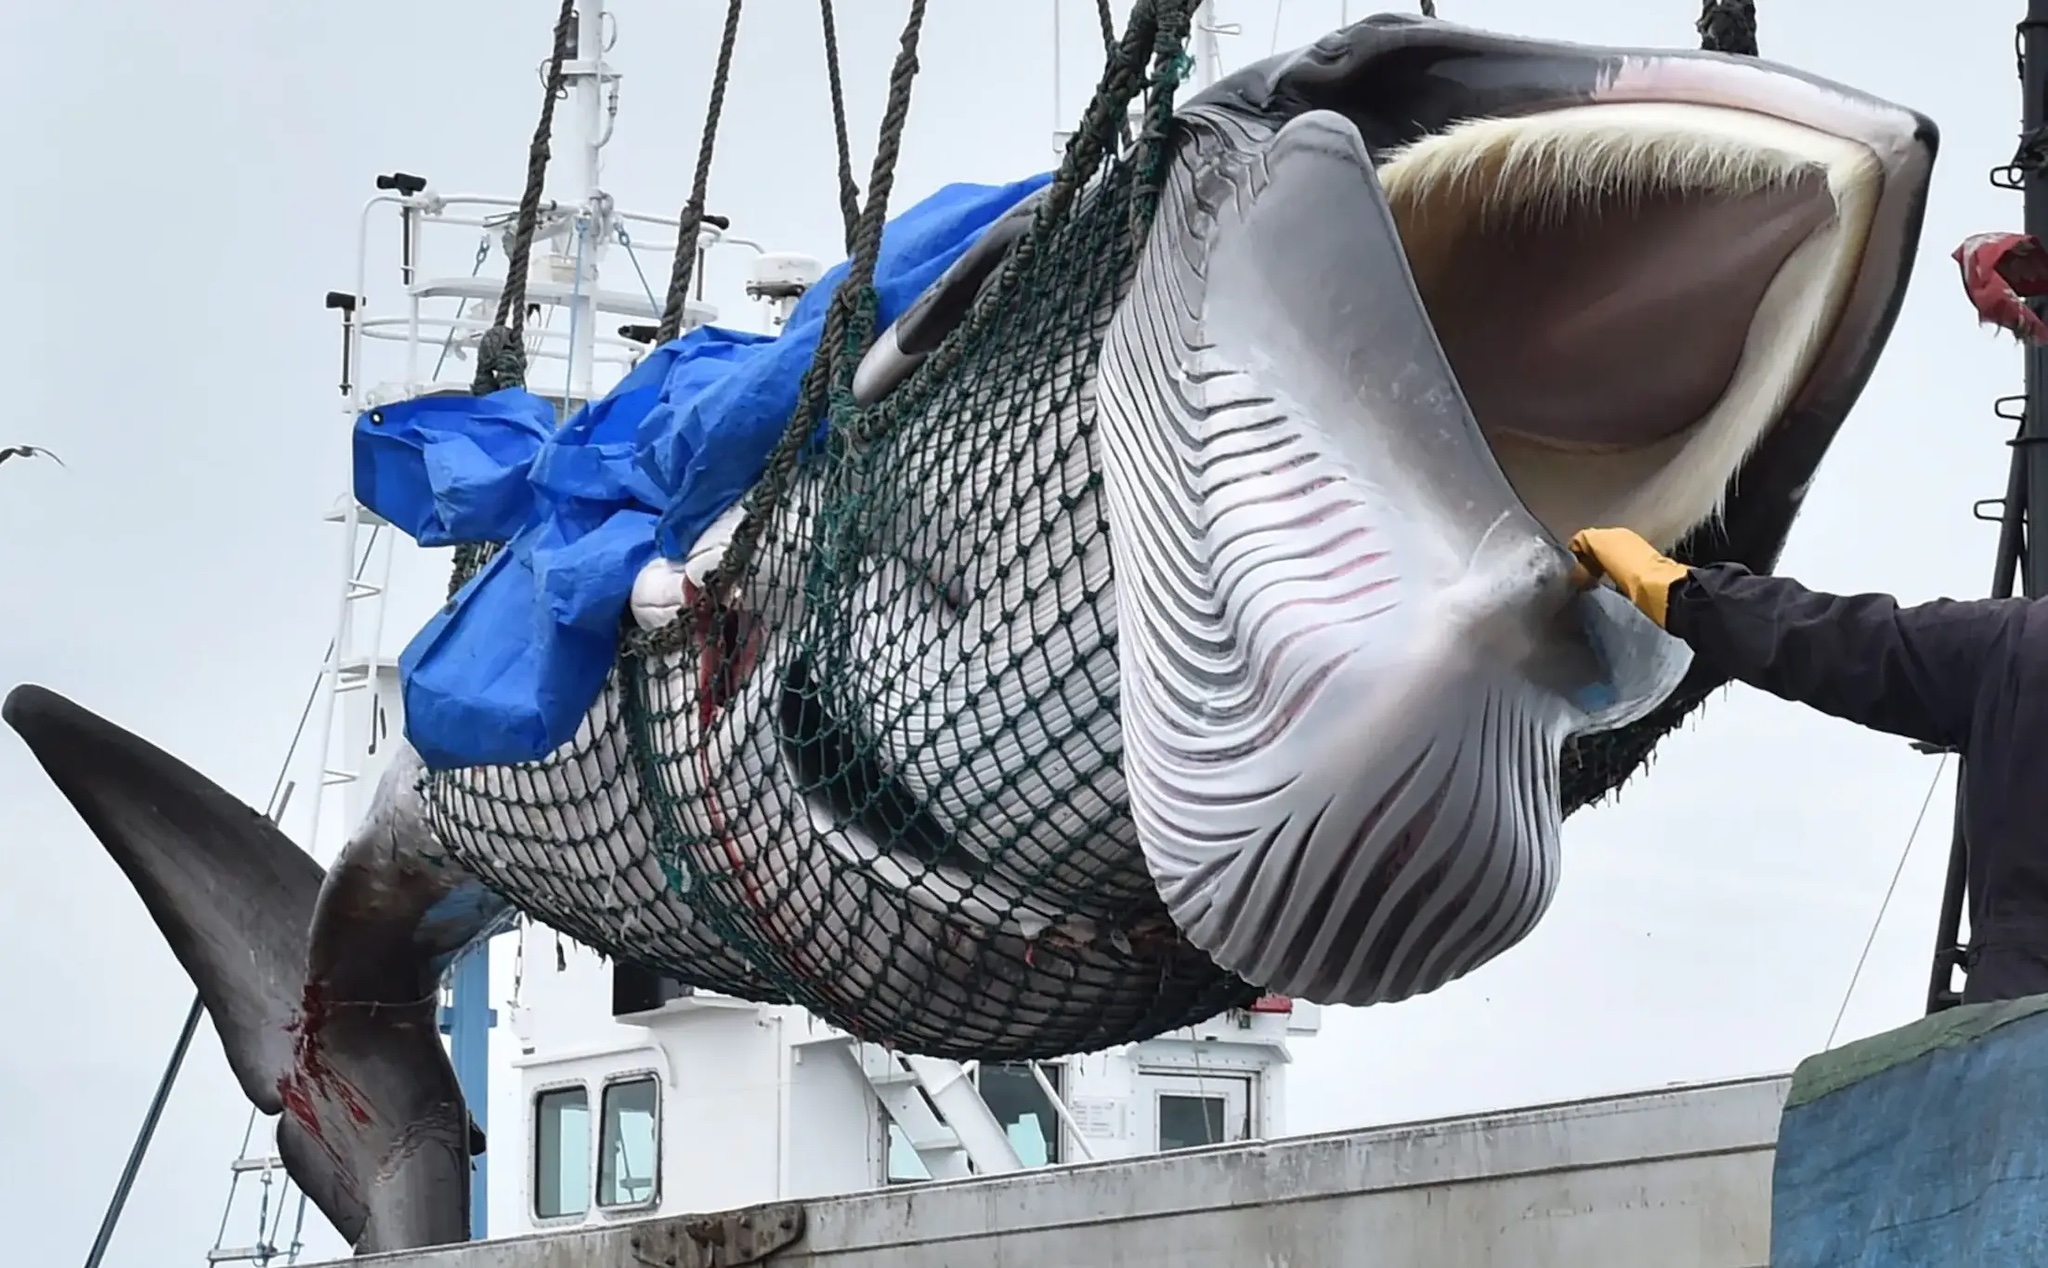 Thịt cá voi được bán trong máy bán hàng tự động ở Nhật Bản